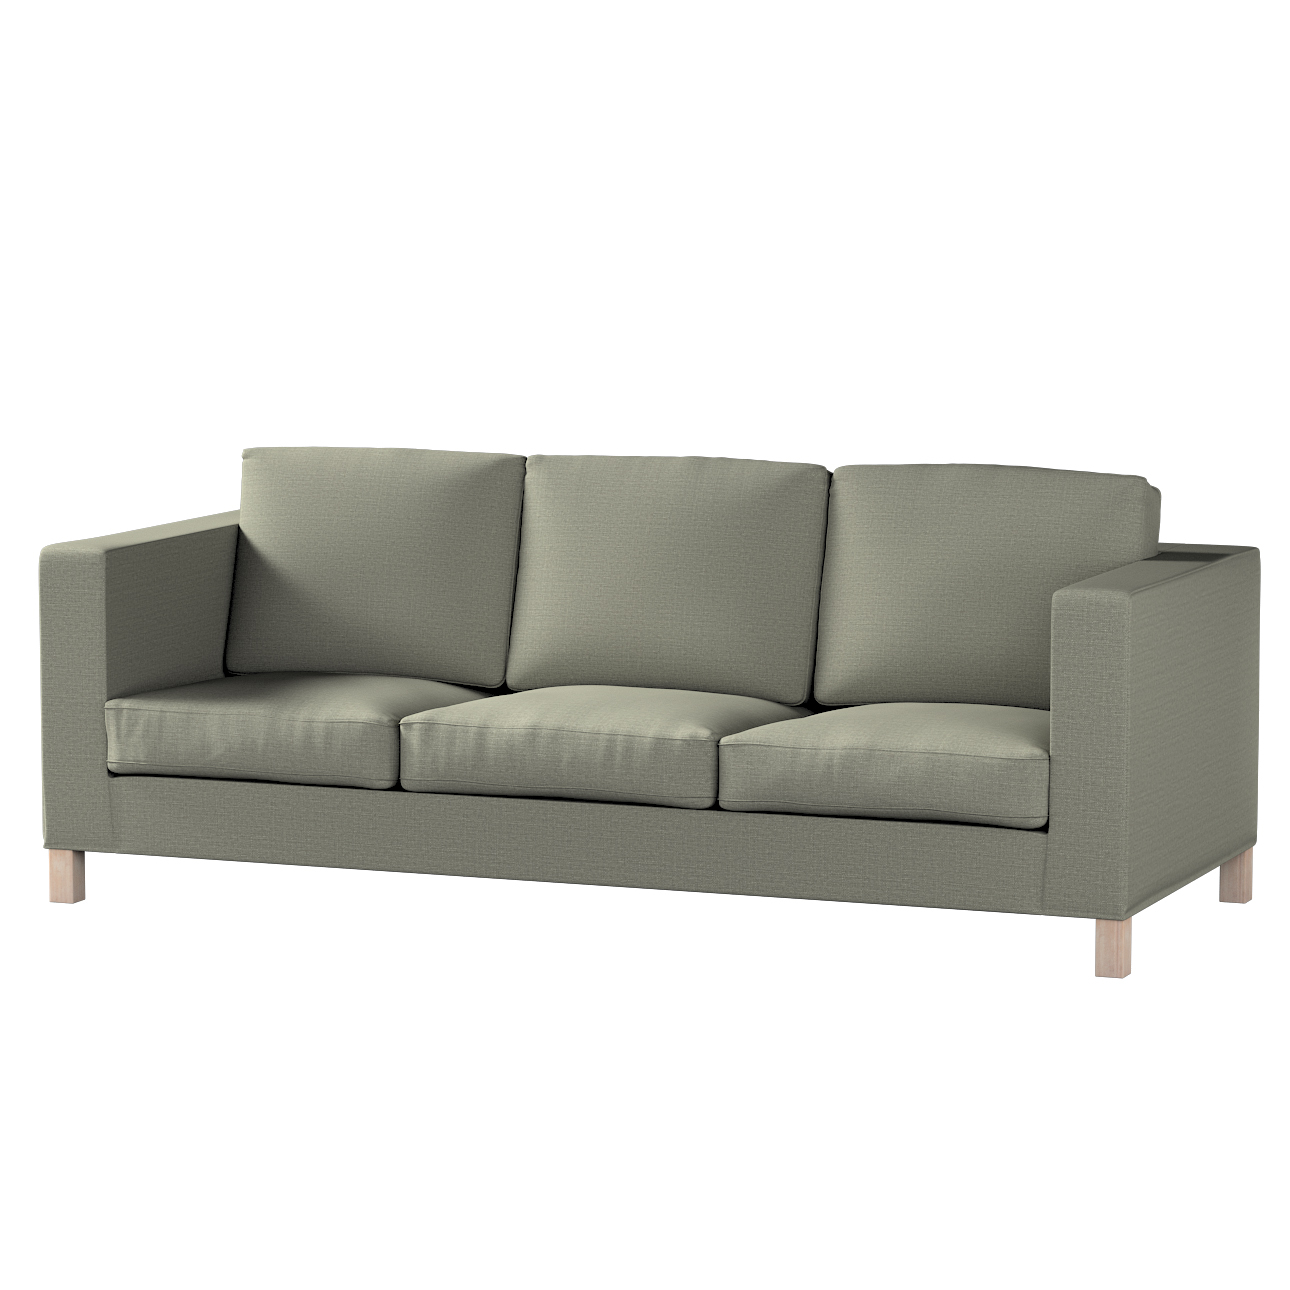 Bezug für Karlanda 3-Sitzer Sofa nicht ausklappbar, kurz, grau-beige, Bezug günstig online kaufen